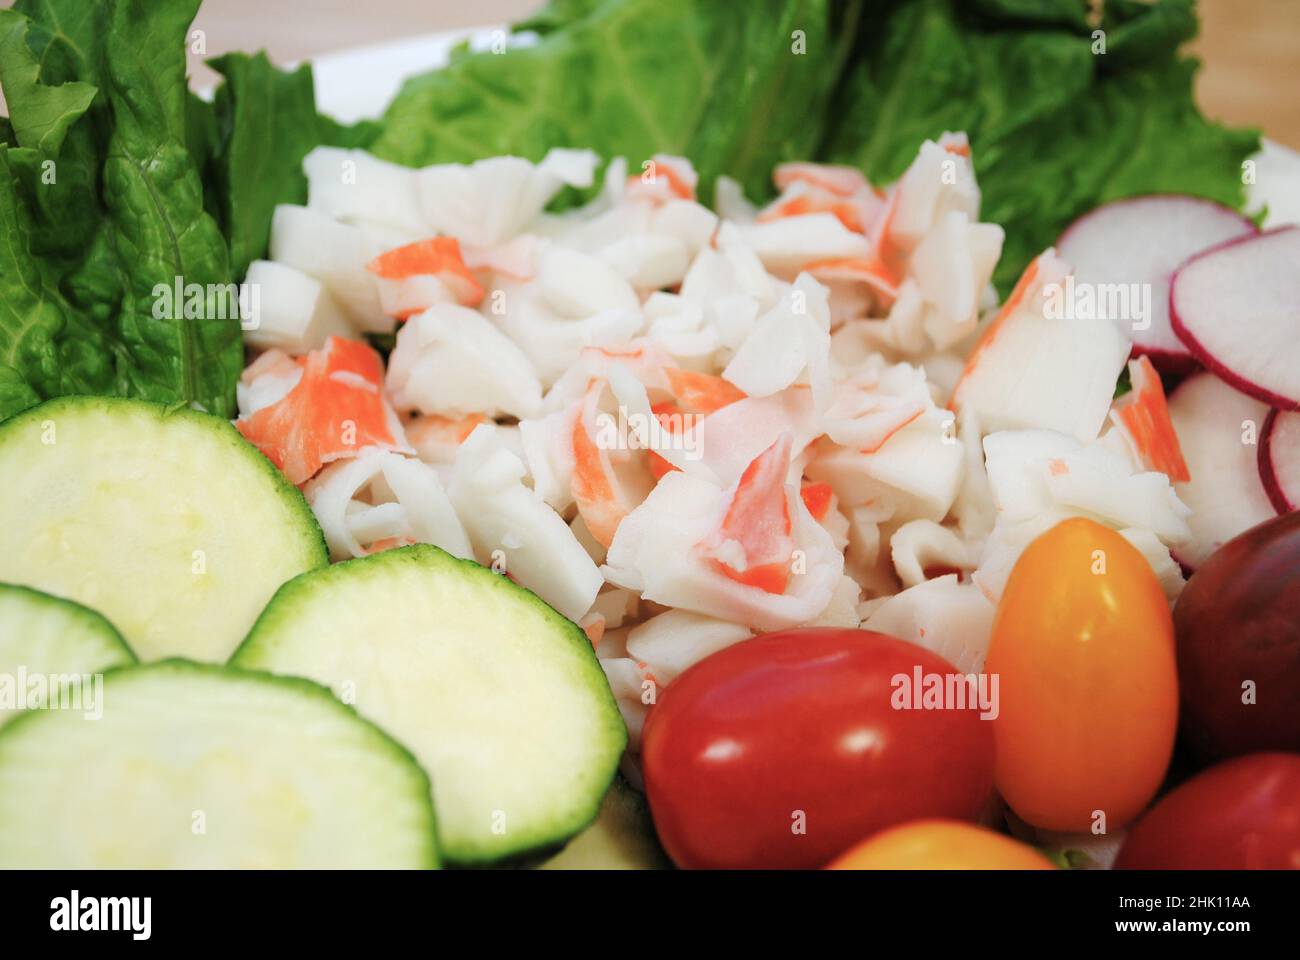 Nahaufnahme von imittierten Meeresfrüchten als Teil eines rohen frischen Salats Stockfoto